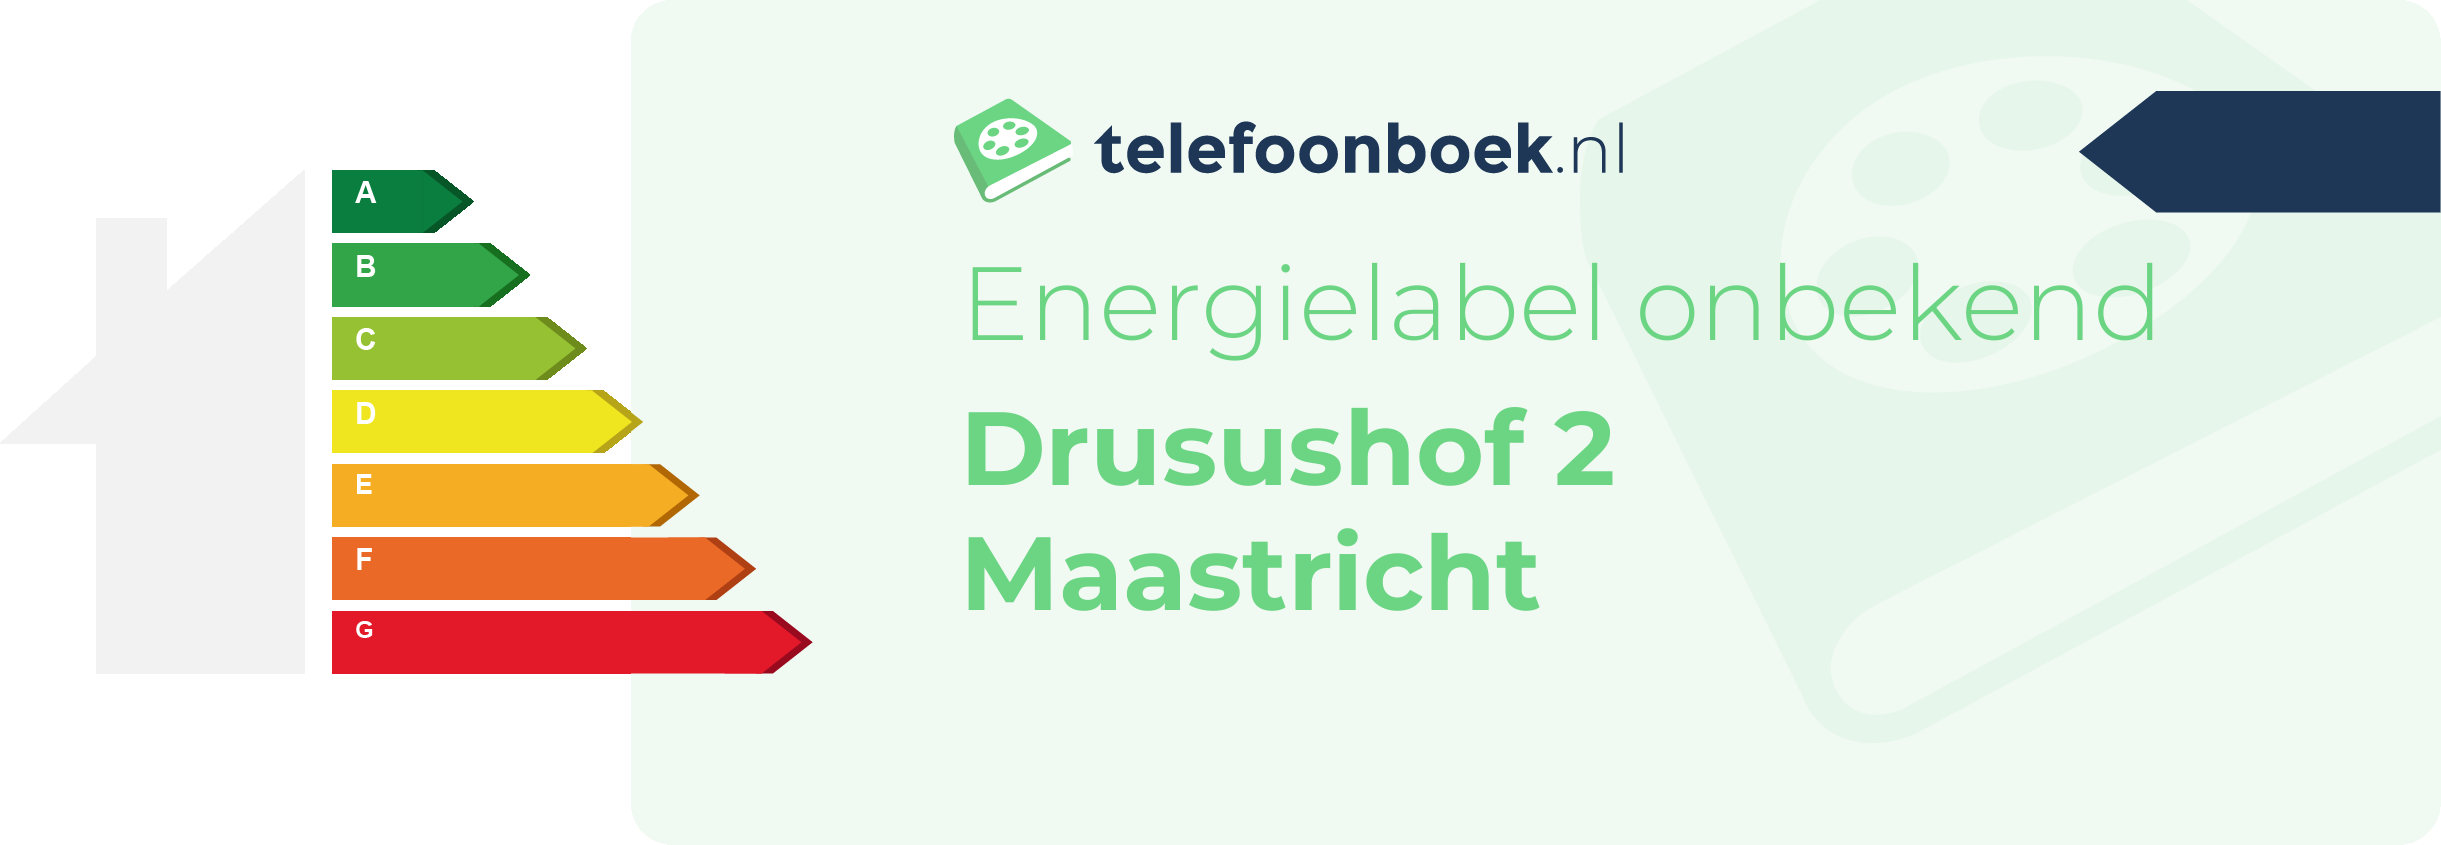 Energielabel Drusushof 2 Maastricht